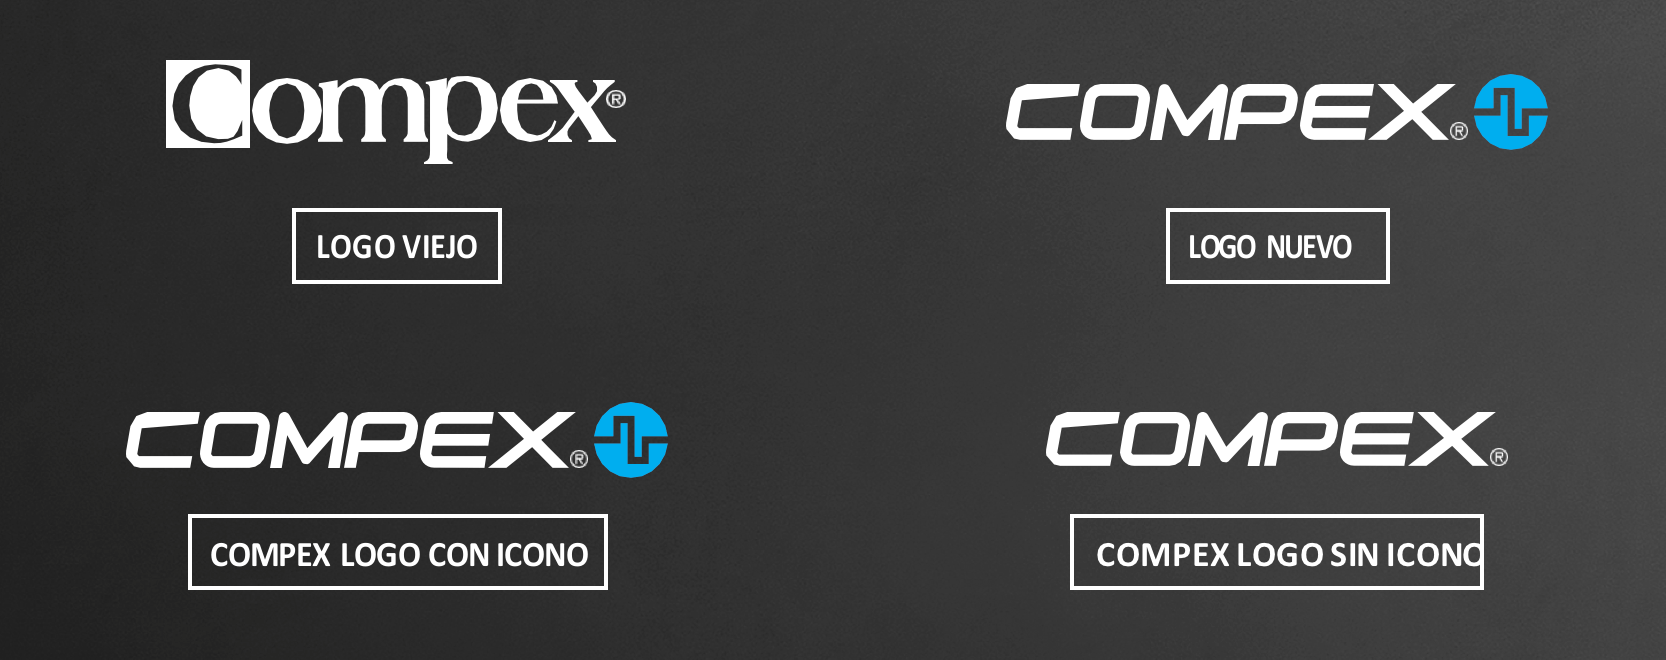 Modifiche al logo Compex